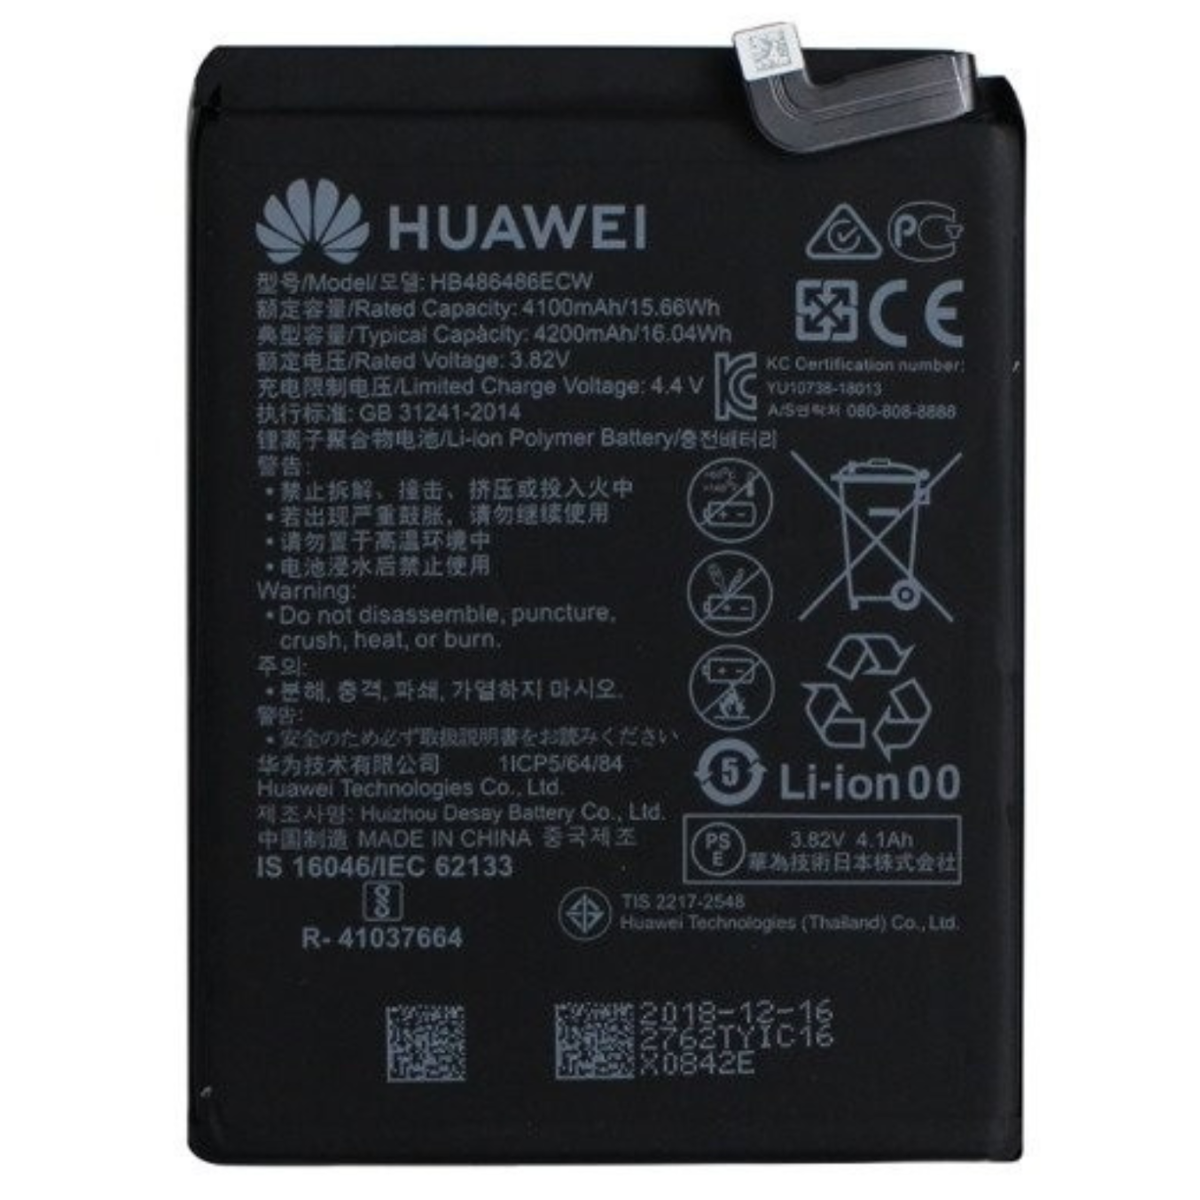 Huawei Pro/Mate HUAWEI für Batterie P30 4200mAh Li-Ion Akku 20 3,82V 4200 Pro 3.82 Handy-/Smartphoneakku, mAh Huawei Volt, HB486486ECW